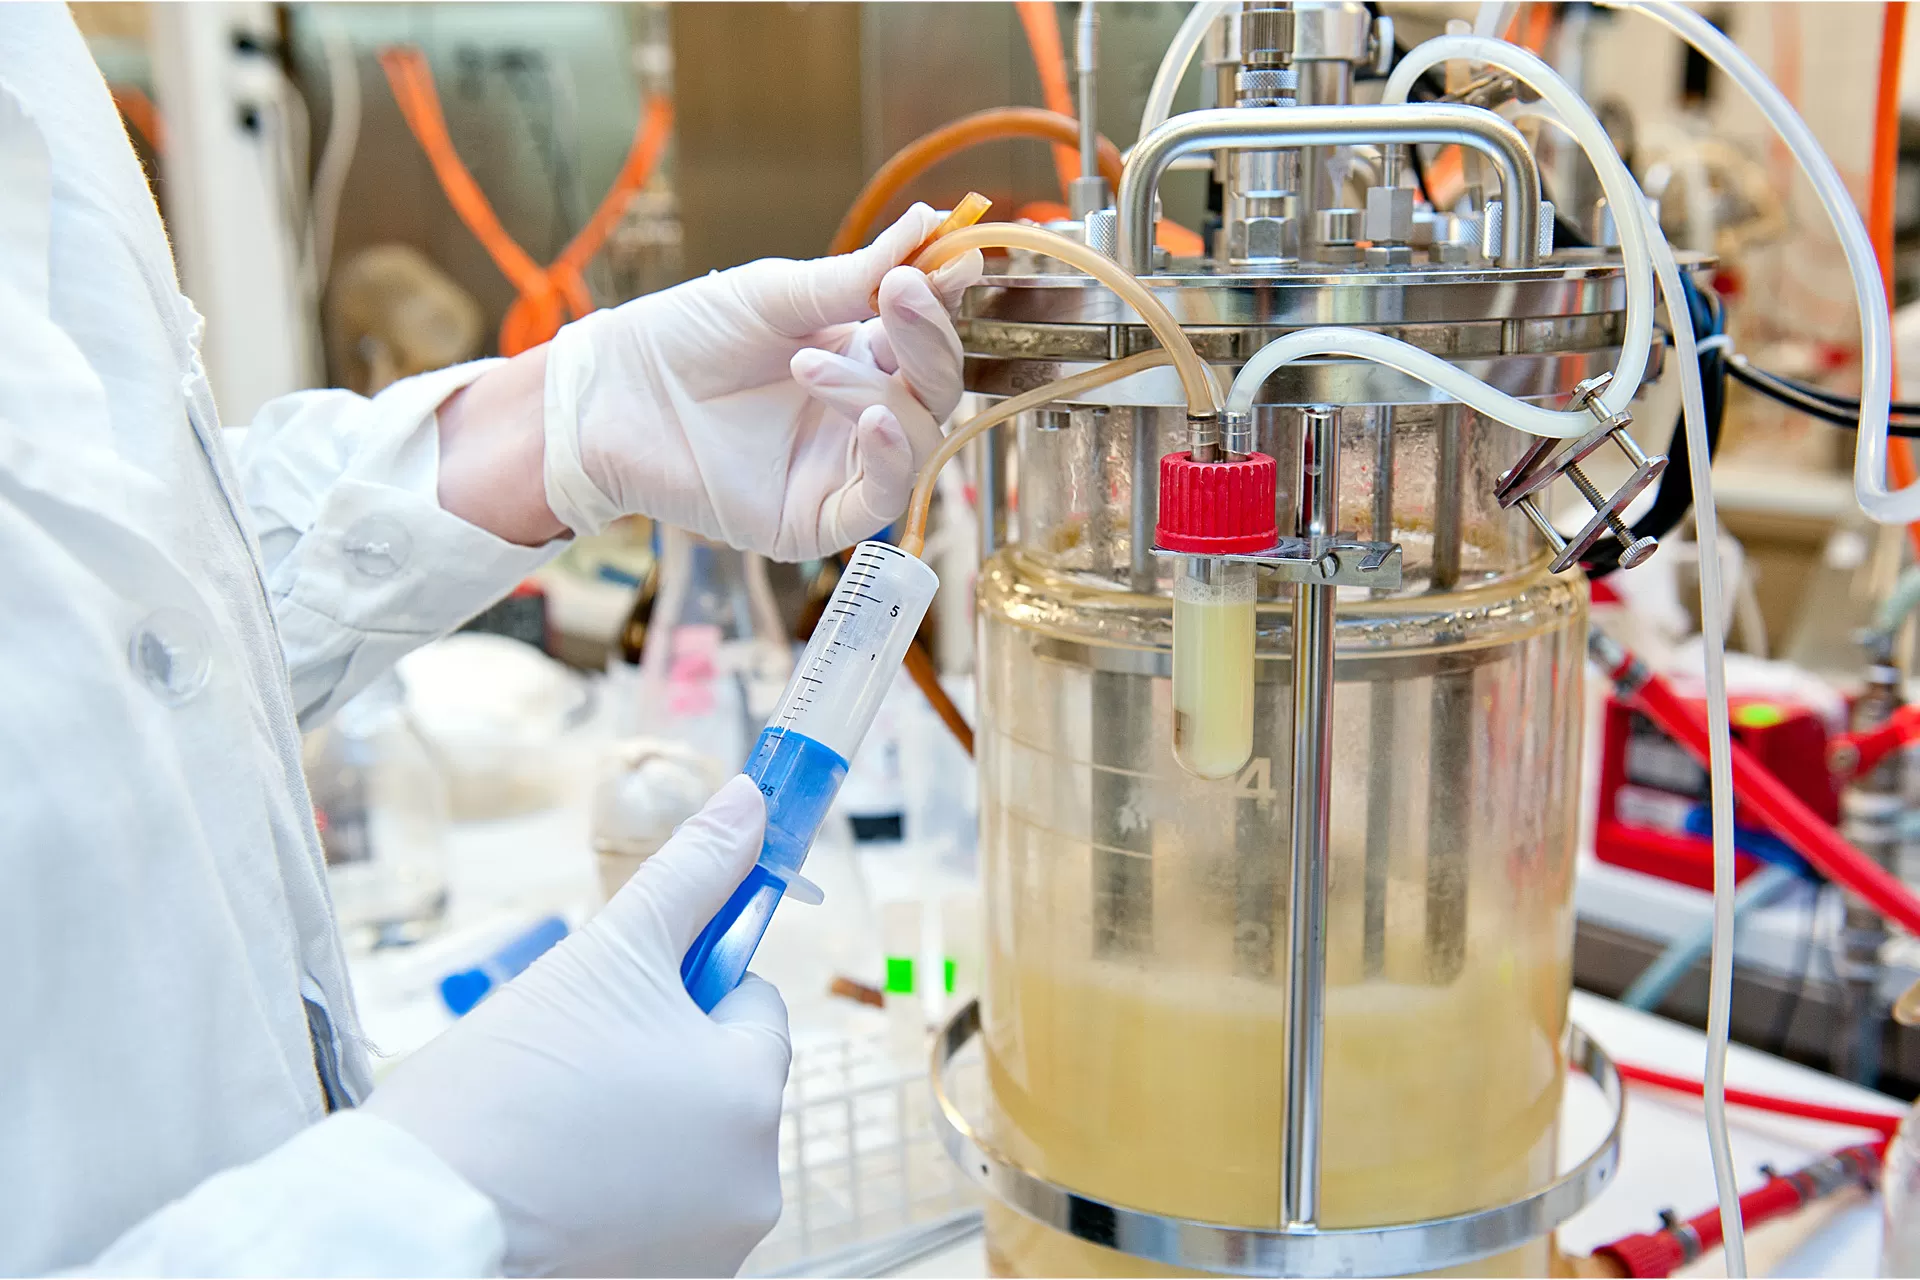 Eine Person mit weissen Handschuhen nimmt eine Probe aus einem Bioreaktor in einem biotechnologischen Labor.